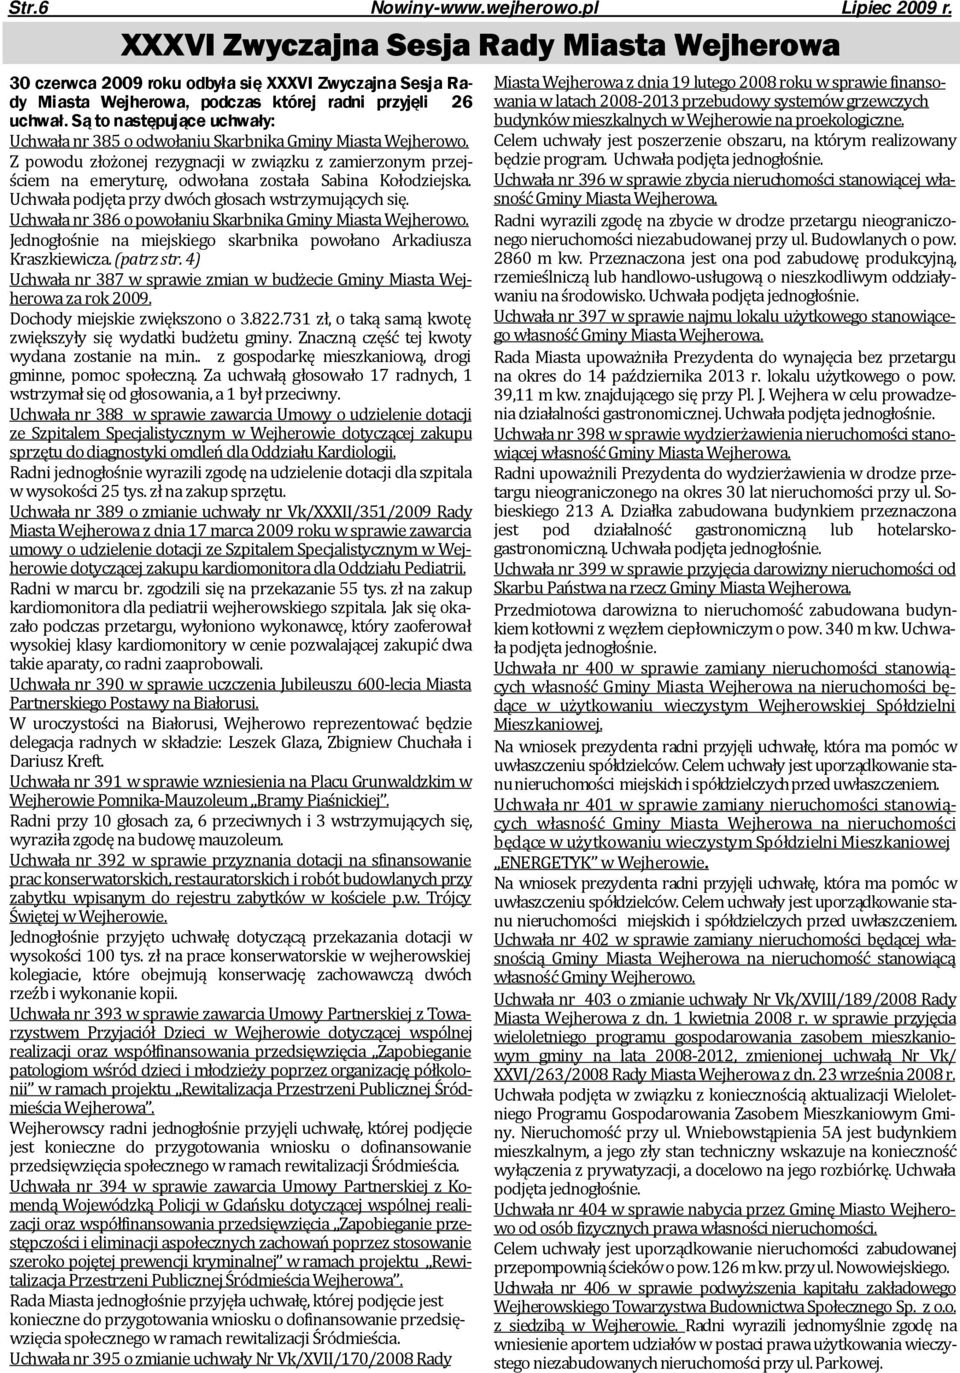 Są to następujące uchwały: Uchwała nr 385 o odwołaniu Skarbnika Gminy Miasta Wejherowo.